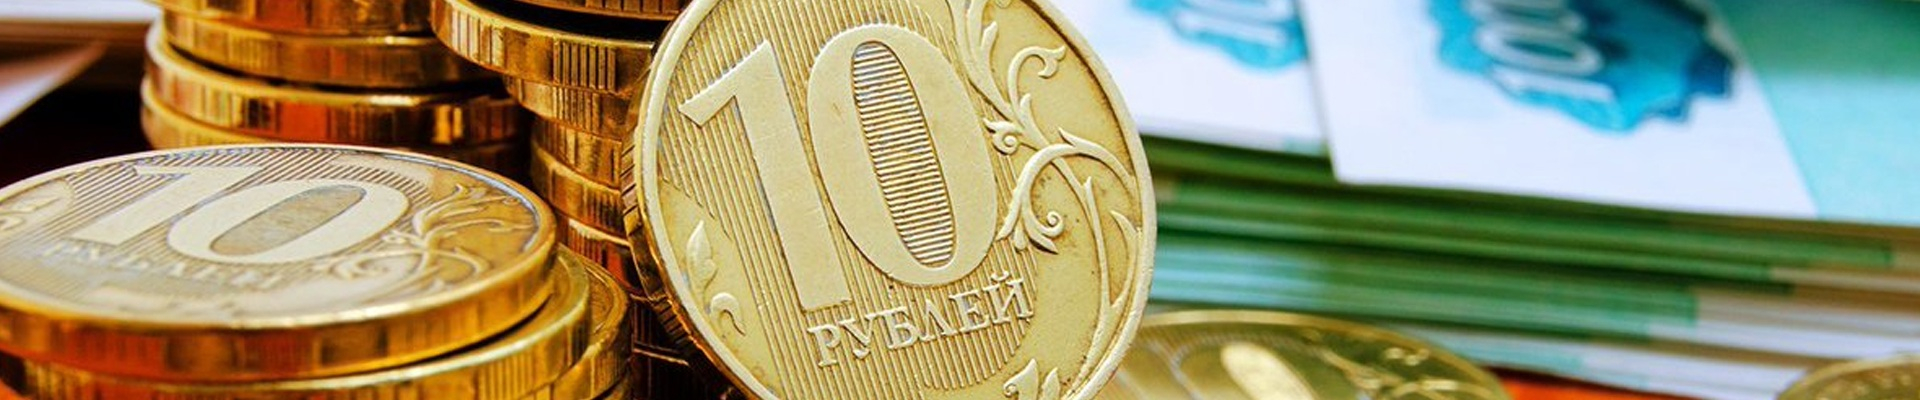 Центральный Банк РФ собирается ввести постоянные каникулы на рынке потребительских кредитов